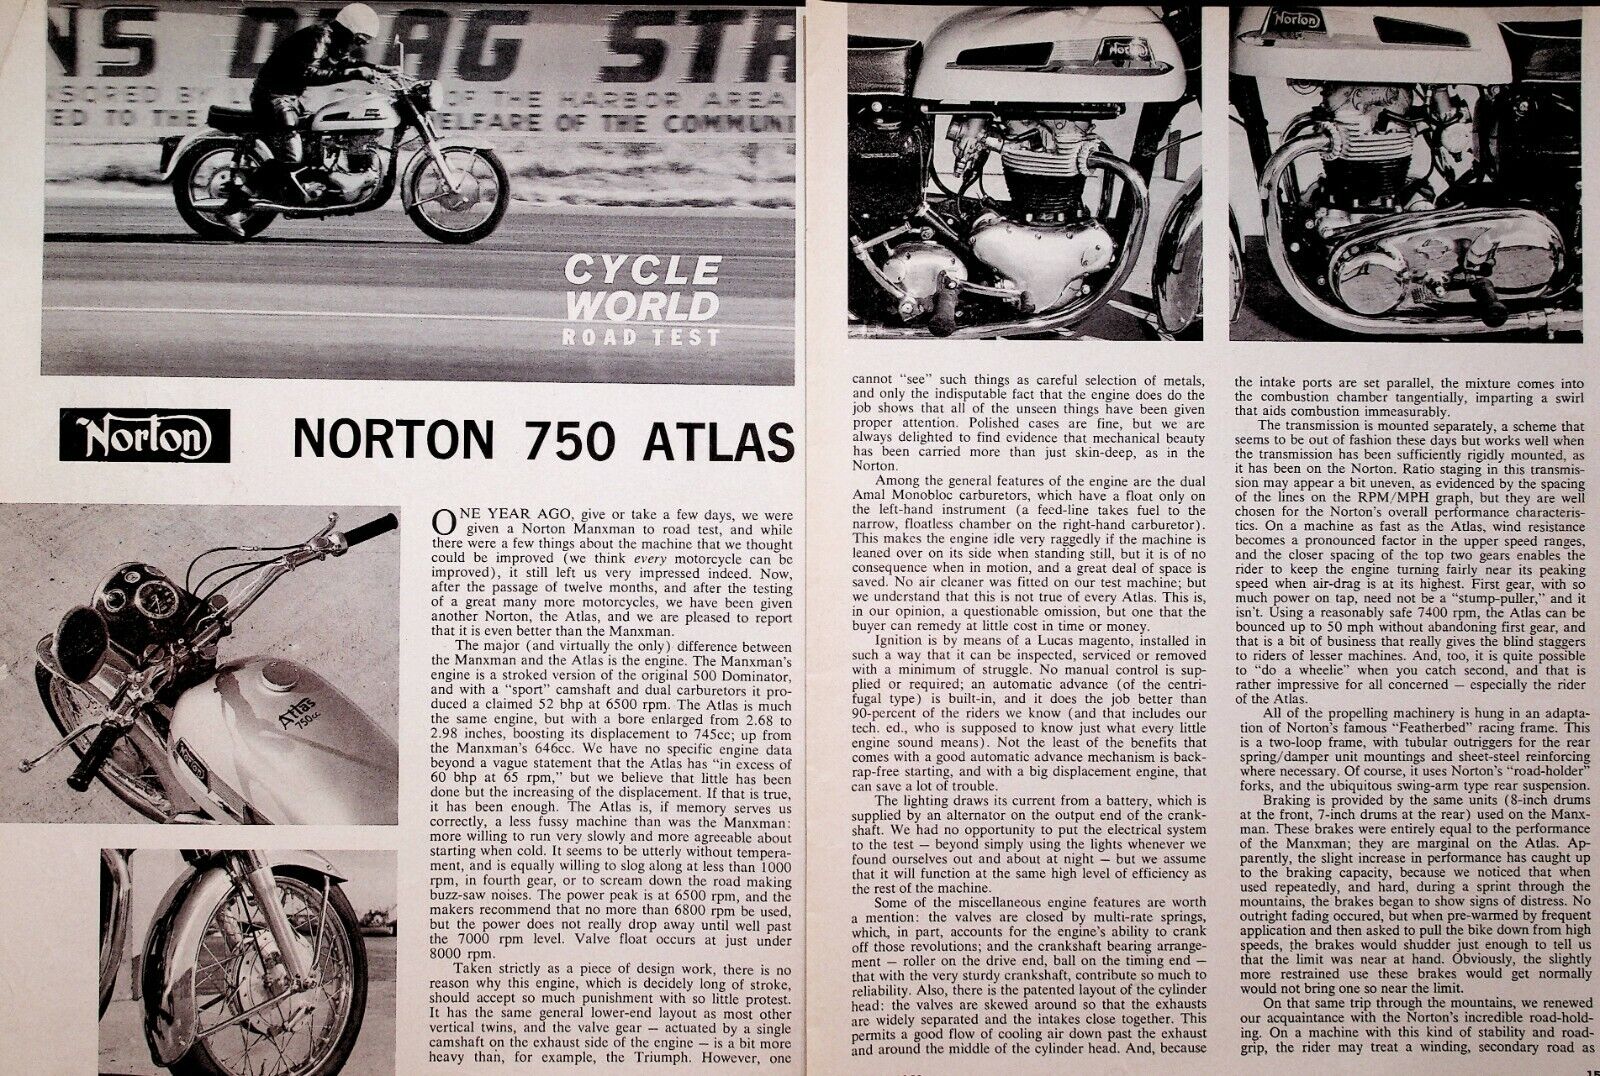 1963 Norton 750 Atlas - 4-Page Vintage Motorcycle Road Test Article